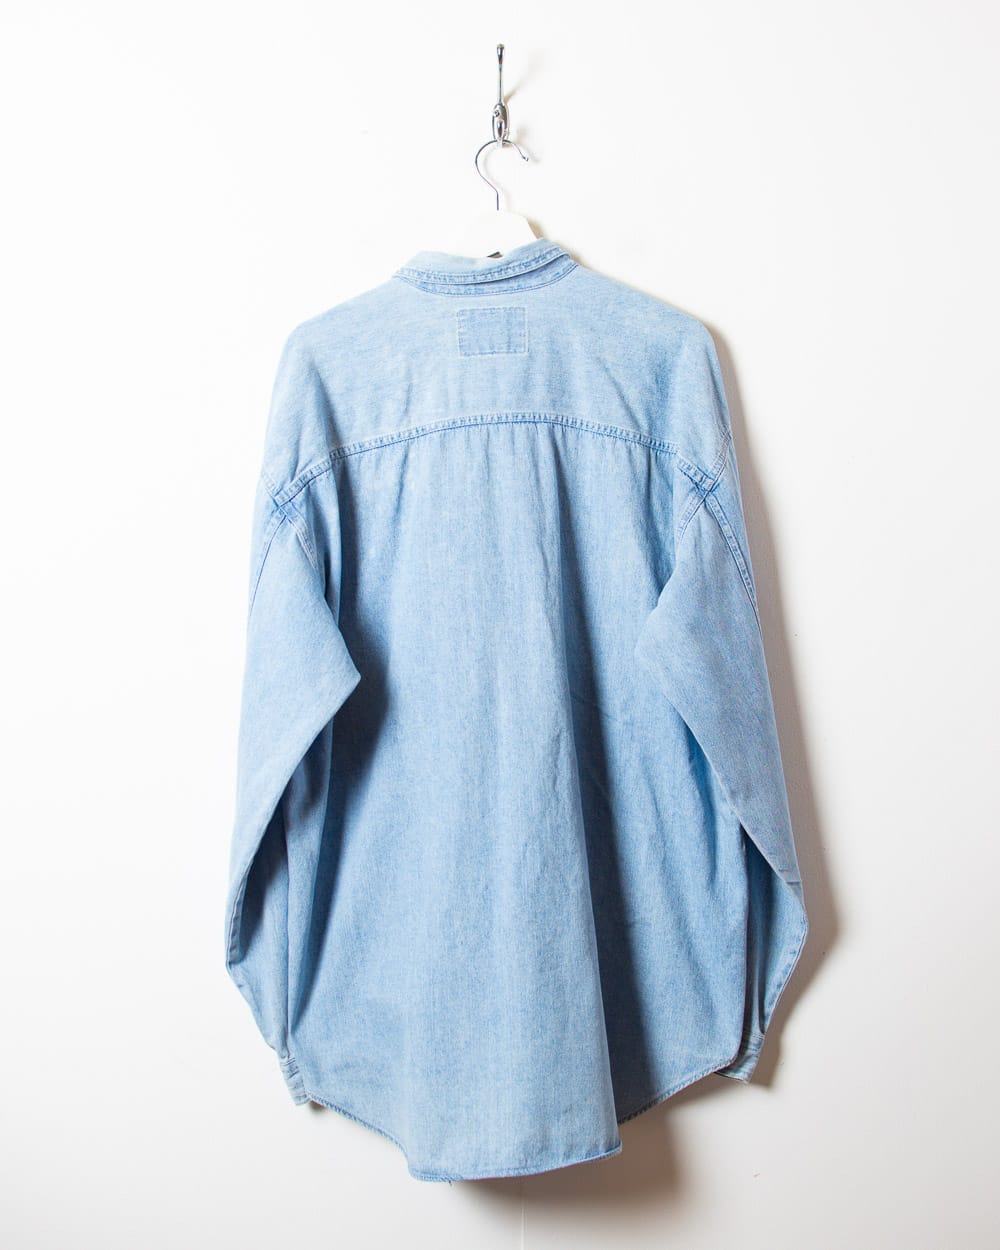 BabyBlue Levi's Denim Shirt - X-Large